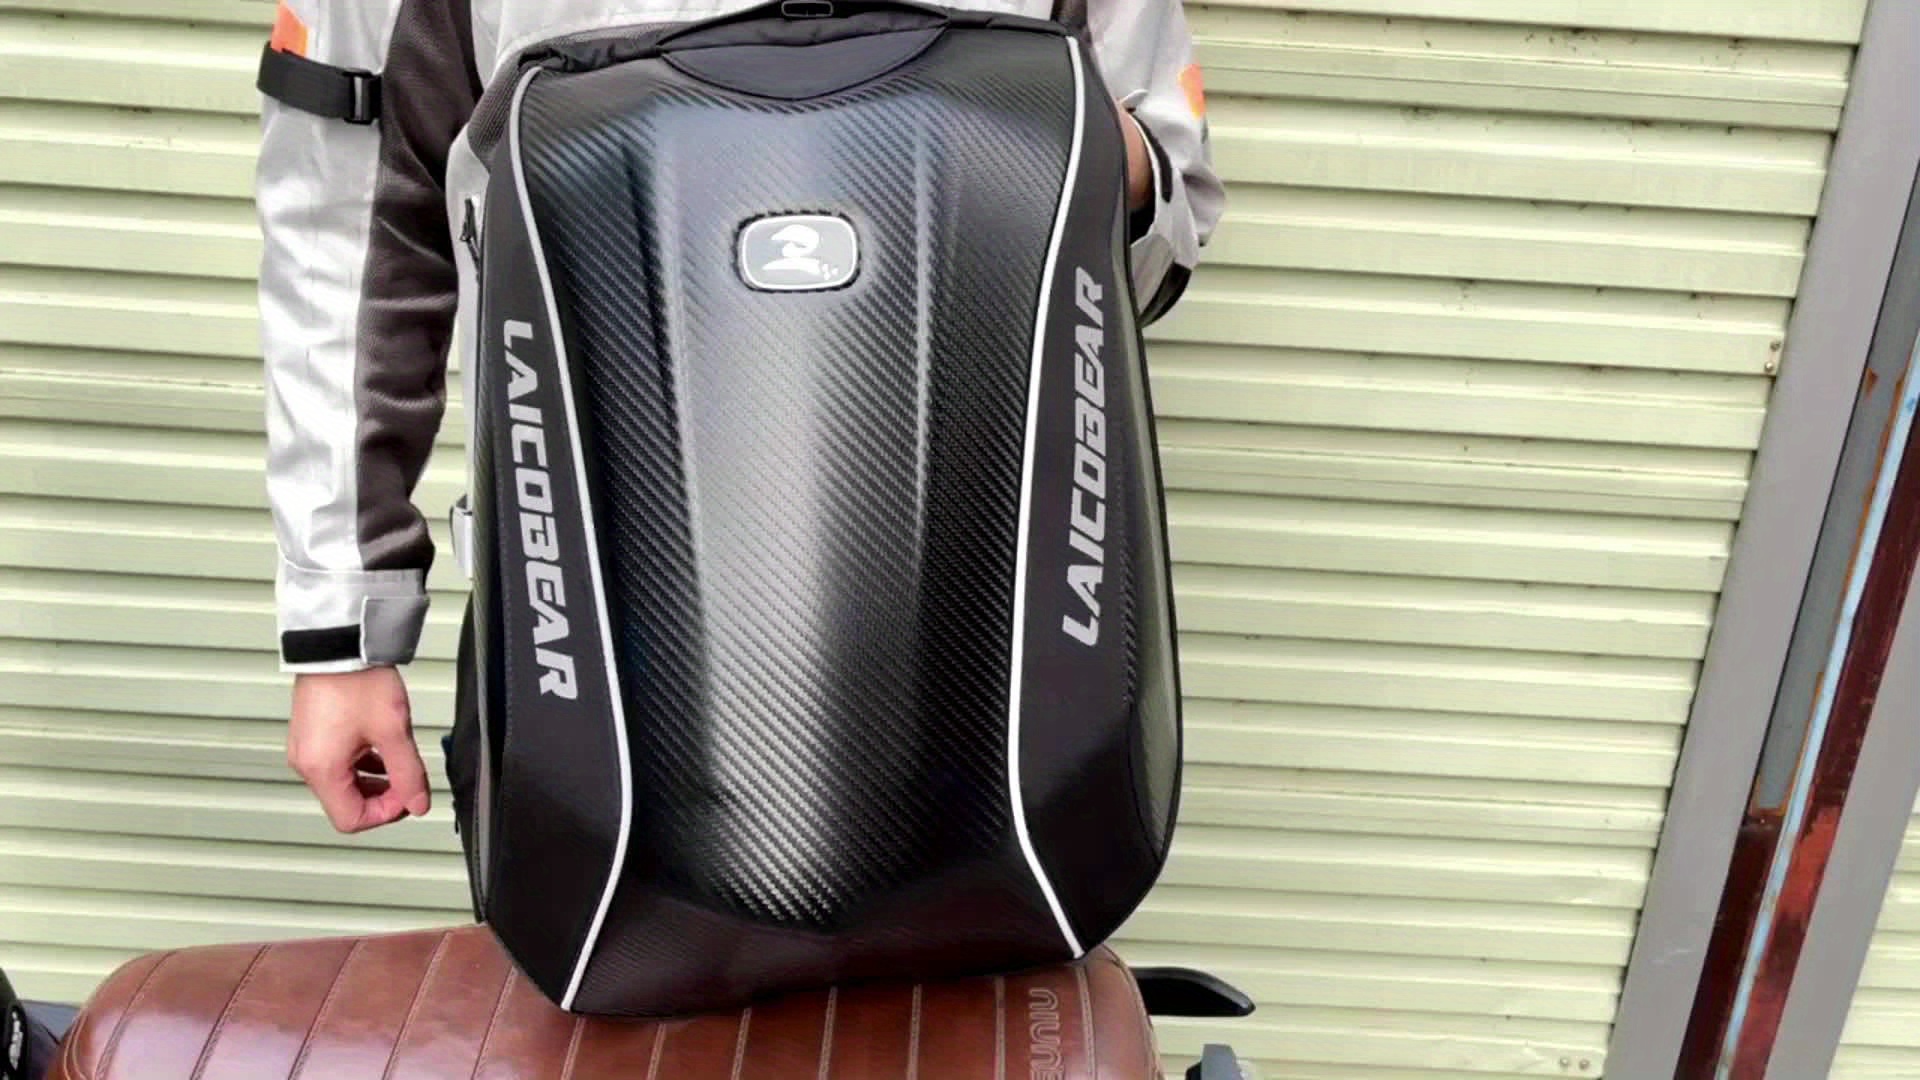 Carbon Fiber Waterproof Motorcycle Backpack